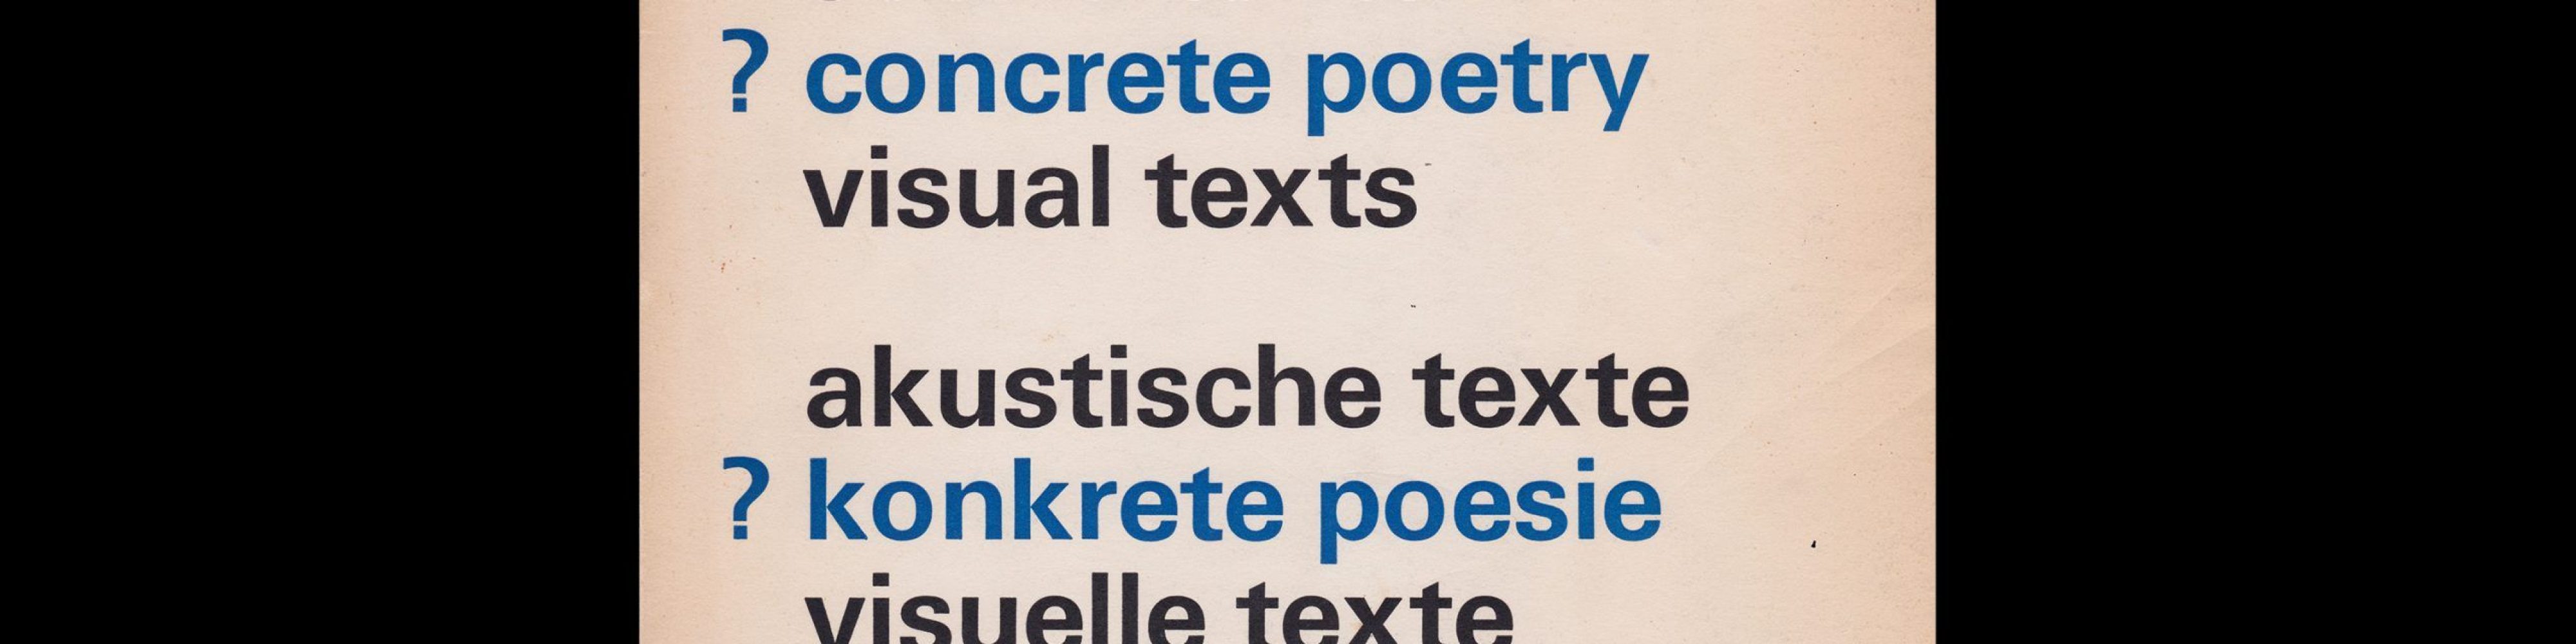 Sound Texts, Concrete Poetry, Visual Texts, Stedelijk Museum, Amsterdam, 1971 designed by Wim Crouwel and Jolijn van de Wouw (Total Design)